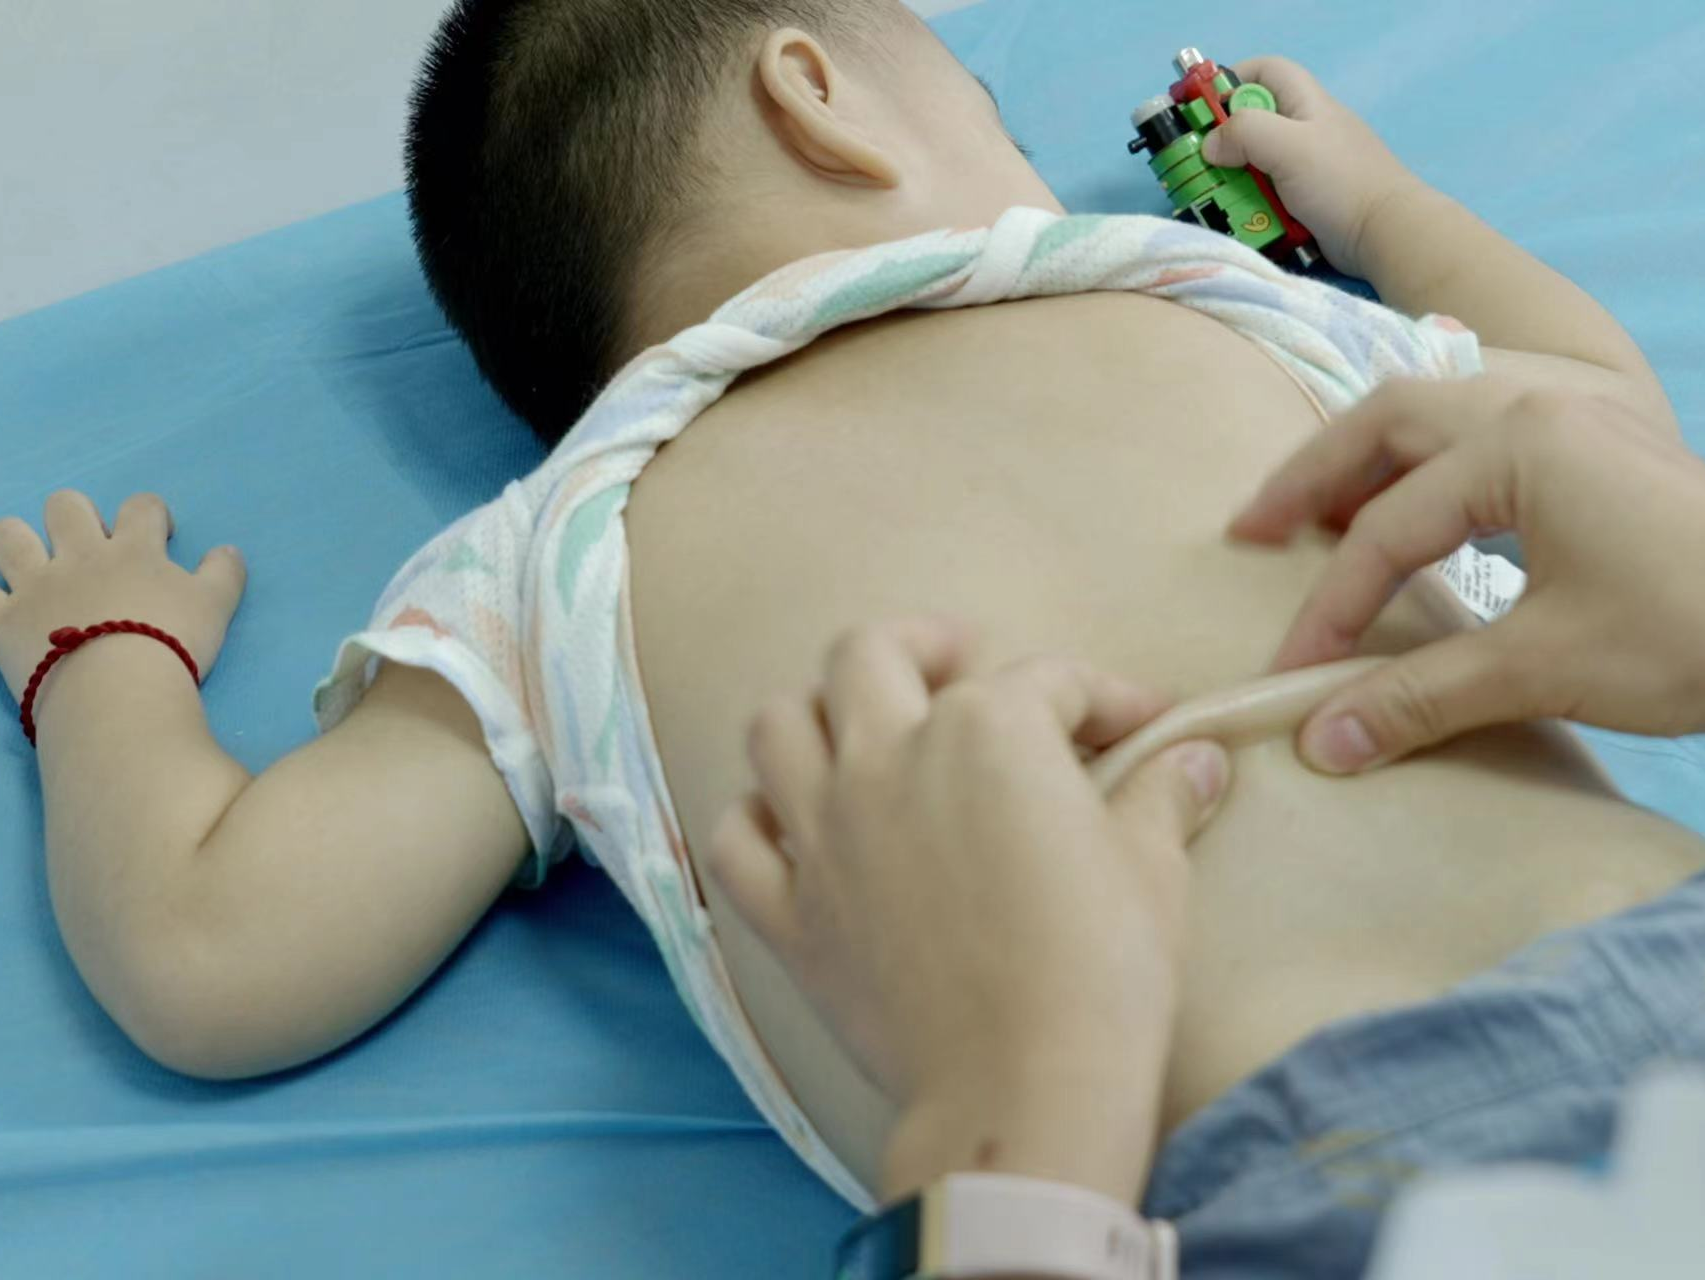 用中医手段助特殊儿童康复 龙岗区探索“医-康-教”一体化综合康复模式